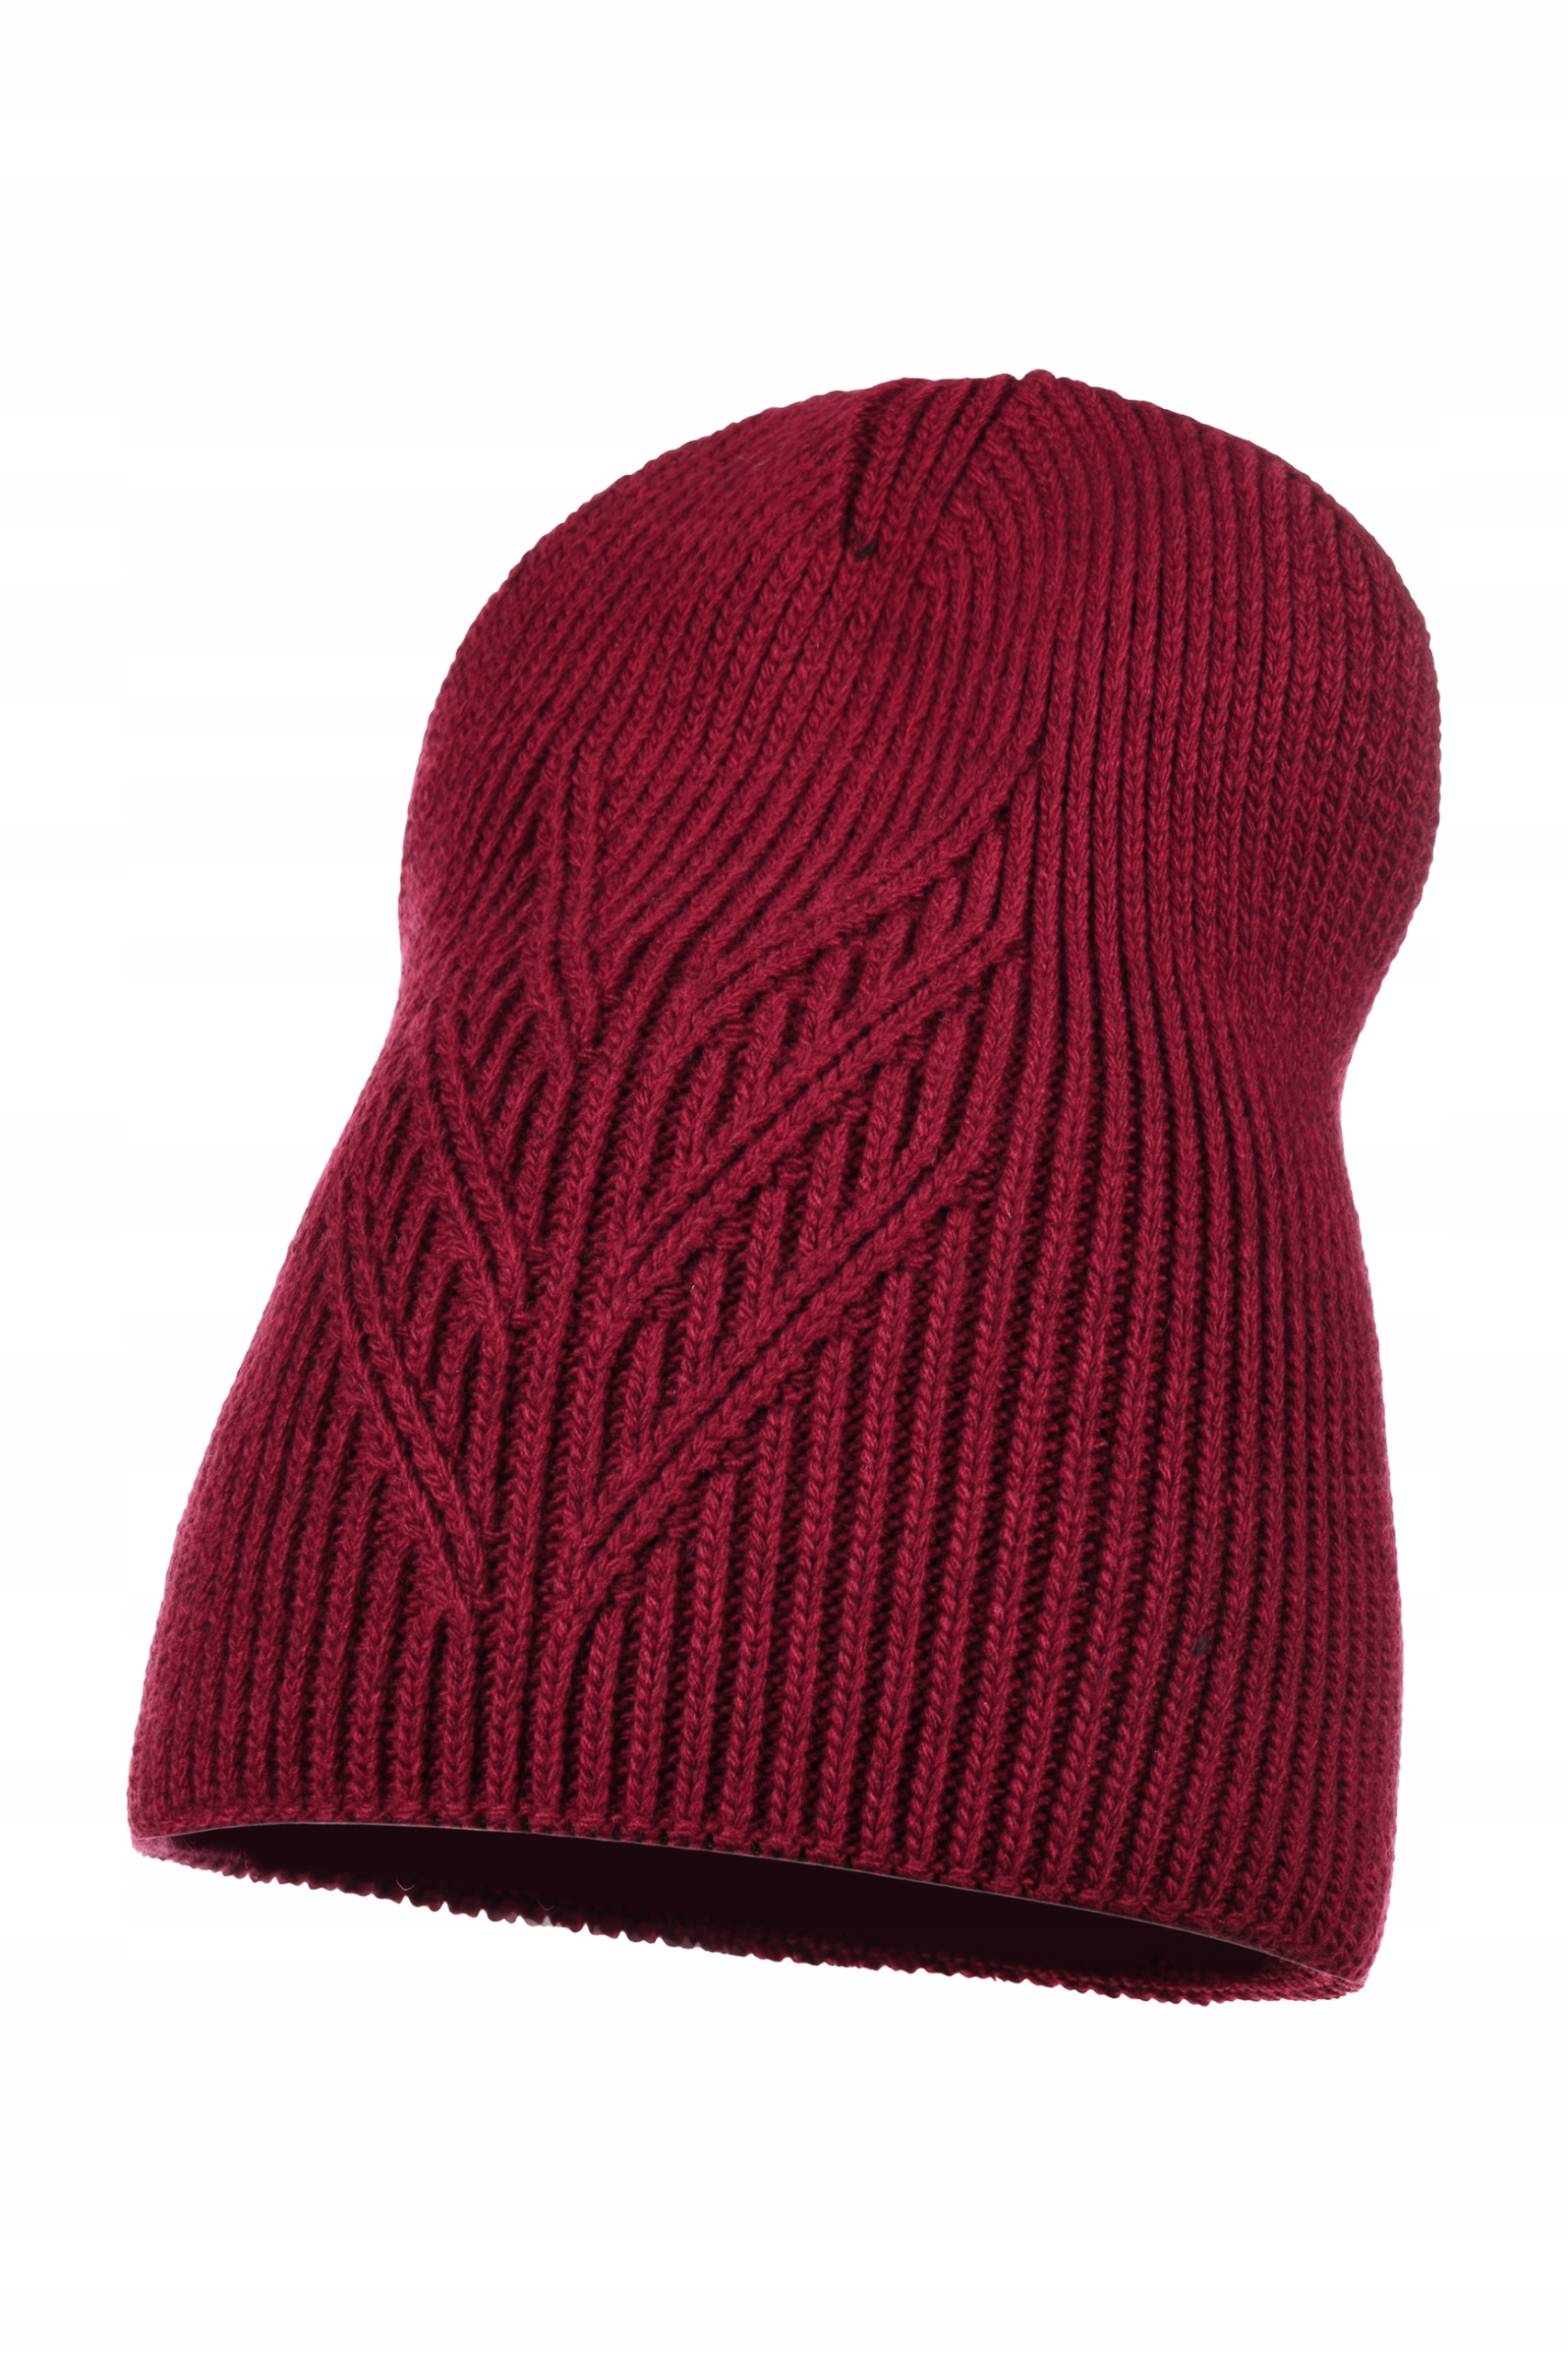 жіноча шапка біні осінь зима Майка код виробника D - 5 бордовий